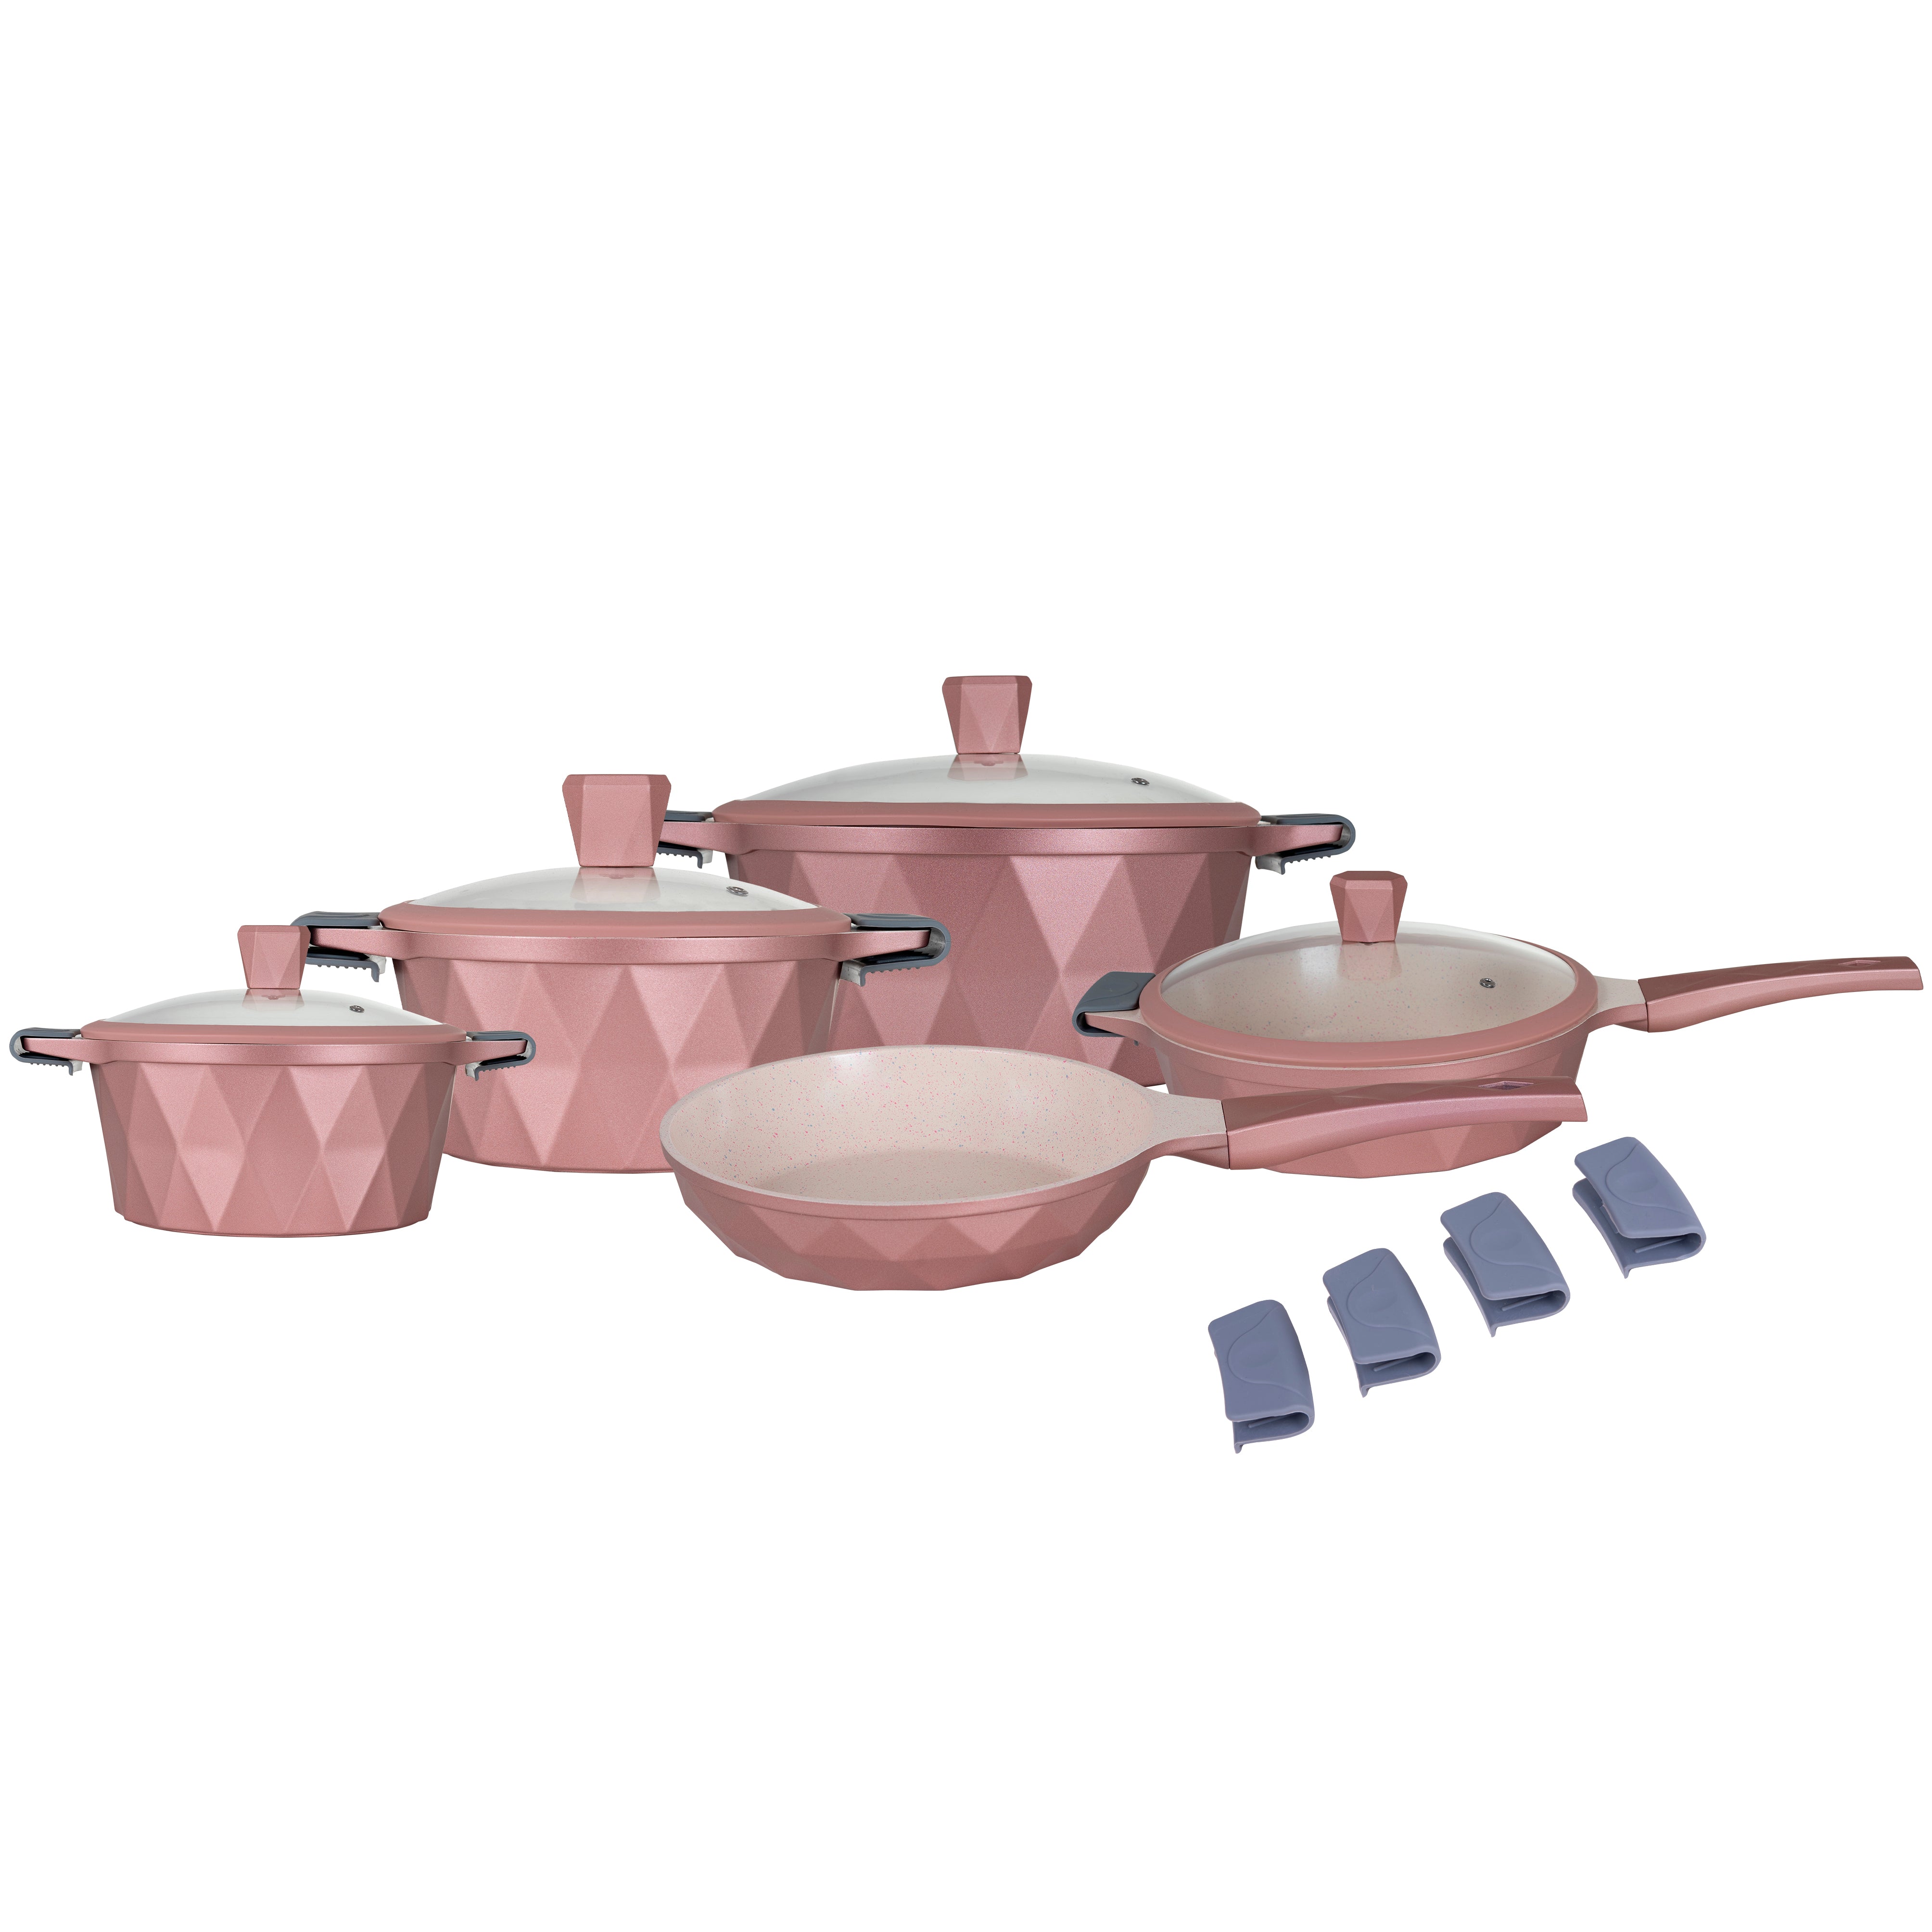 Granitestone Juego de ollas y sartenes rojas antiadherentes, juego de 20  piezas de utensilios de cocina y utensilios para hornear con revestimiento